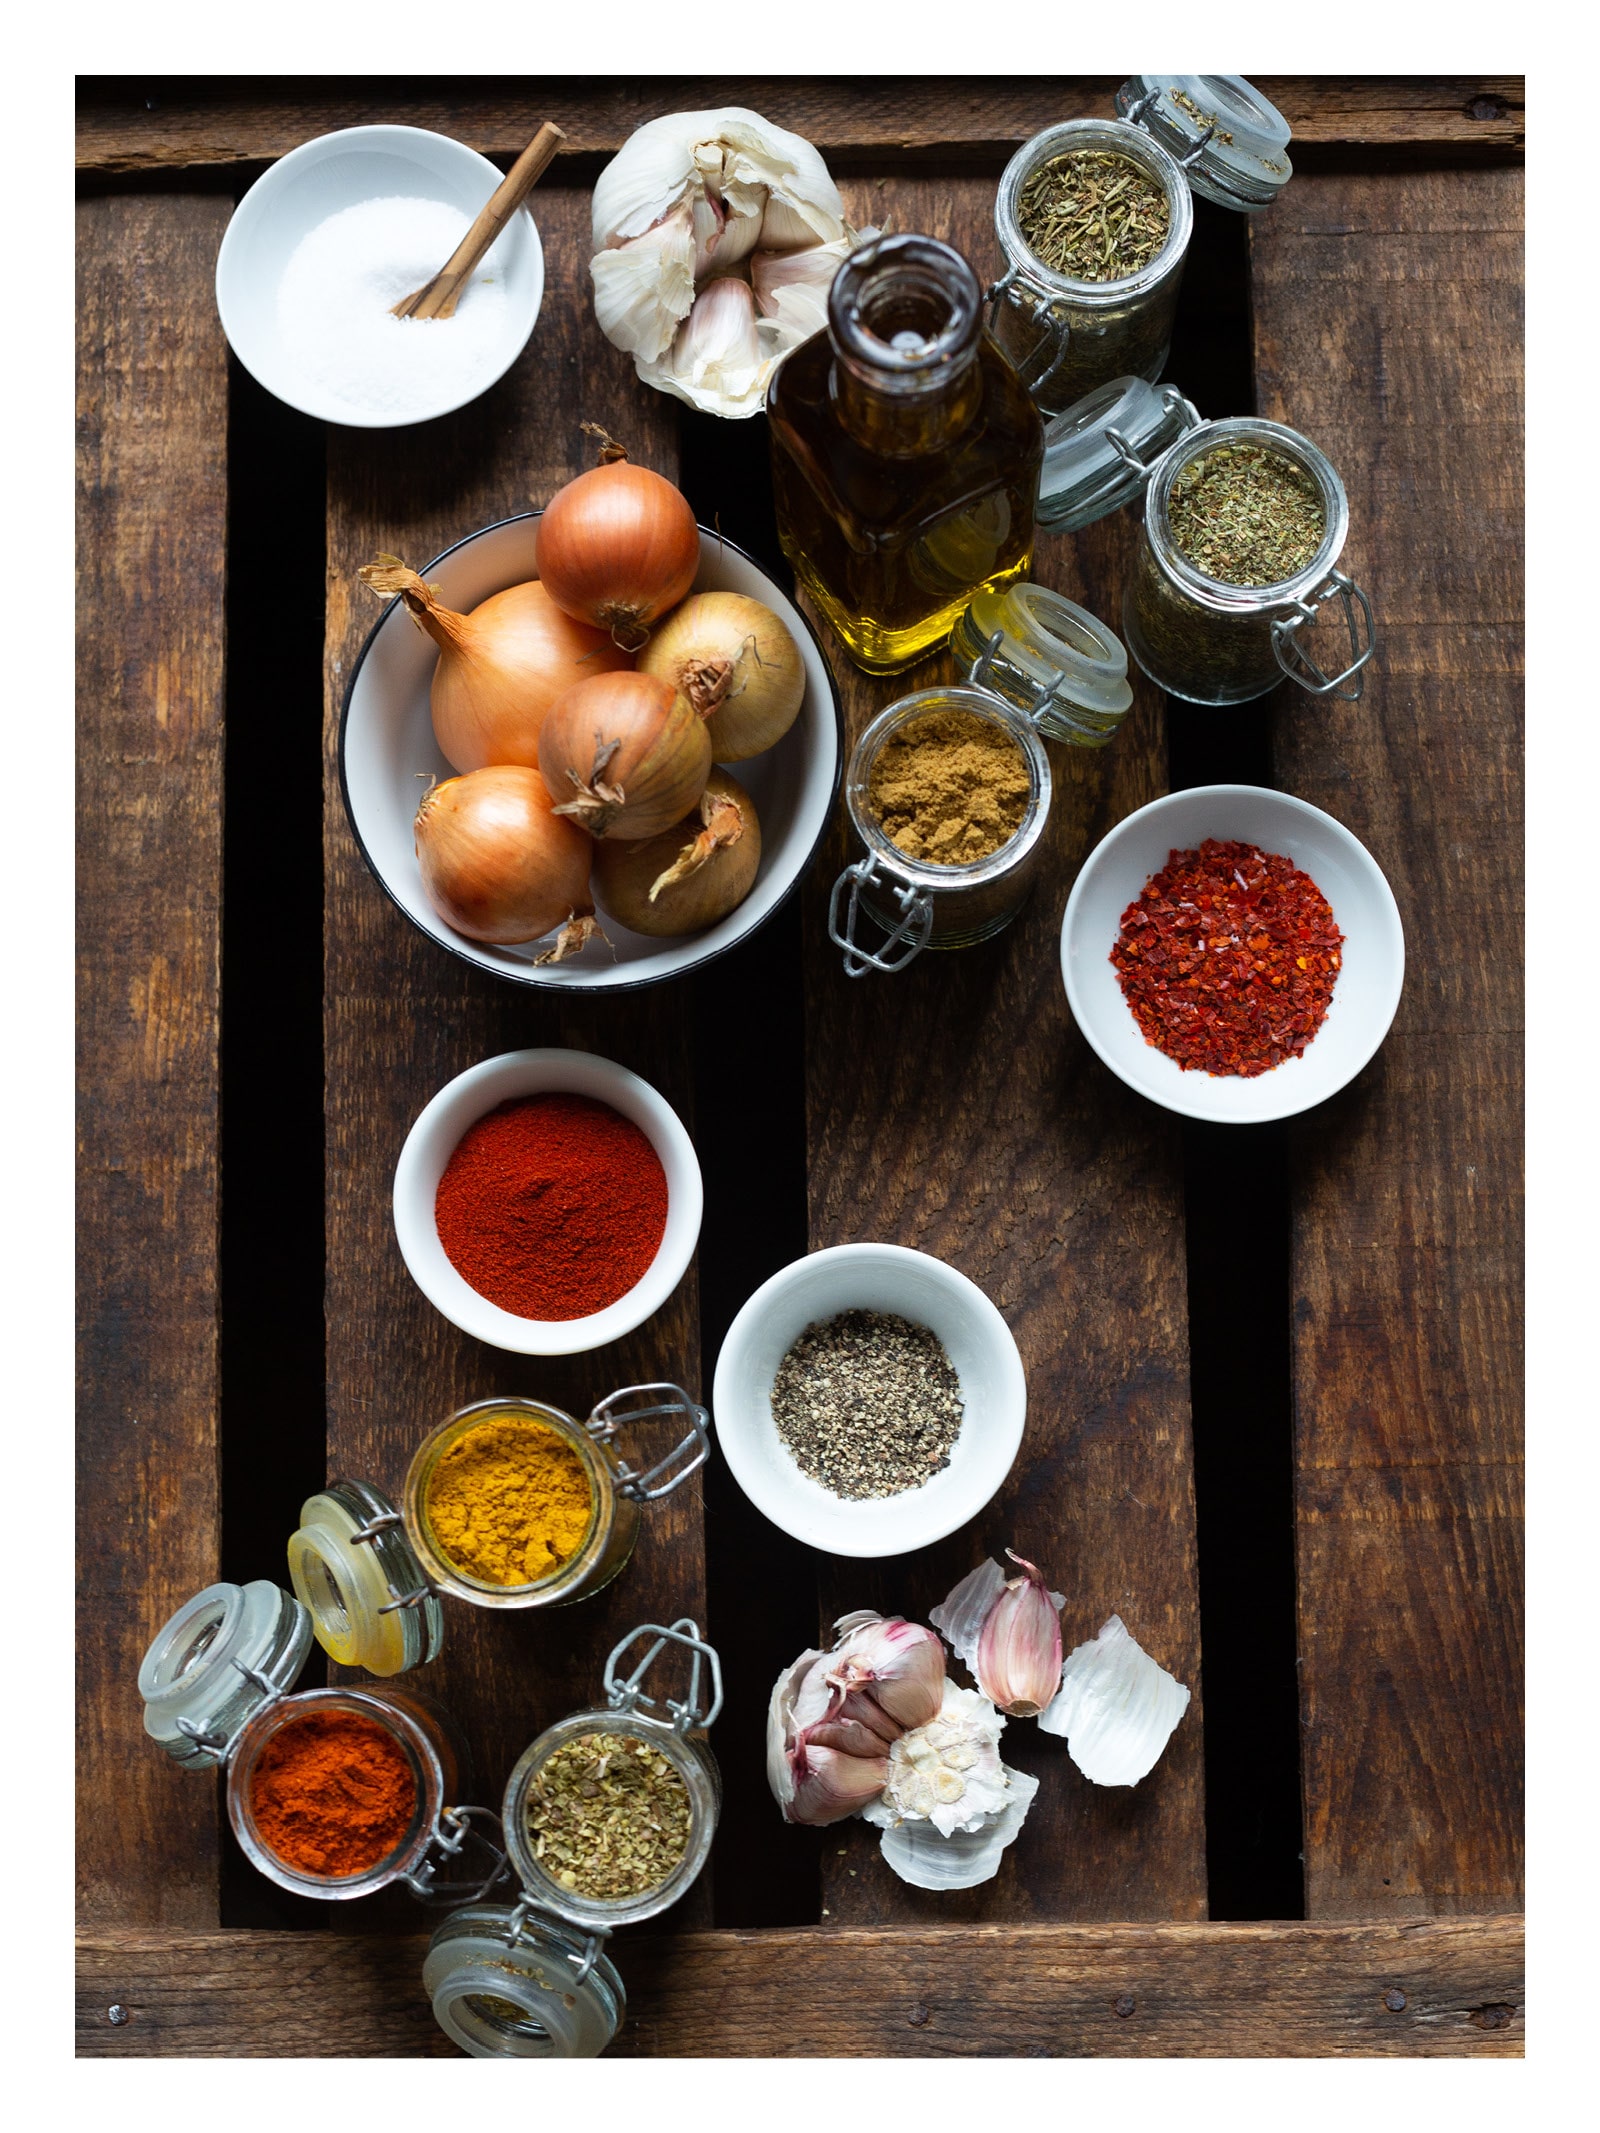 Feierabendküche leicht gemacht eBook. 30 Grundzutaten und passende Rezepte, mit denen du deinen Feierabend revolutionierst! - Kochkarussell.com #FKLG #Feierabendküche #Kochkarussell